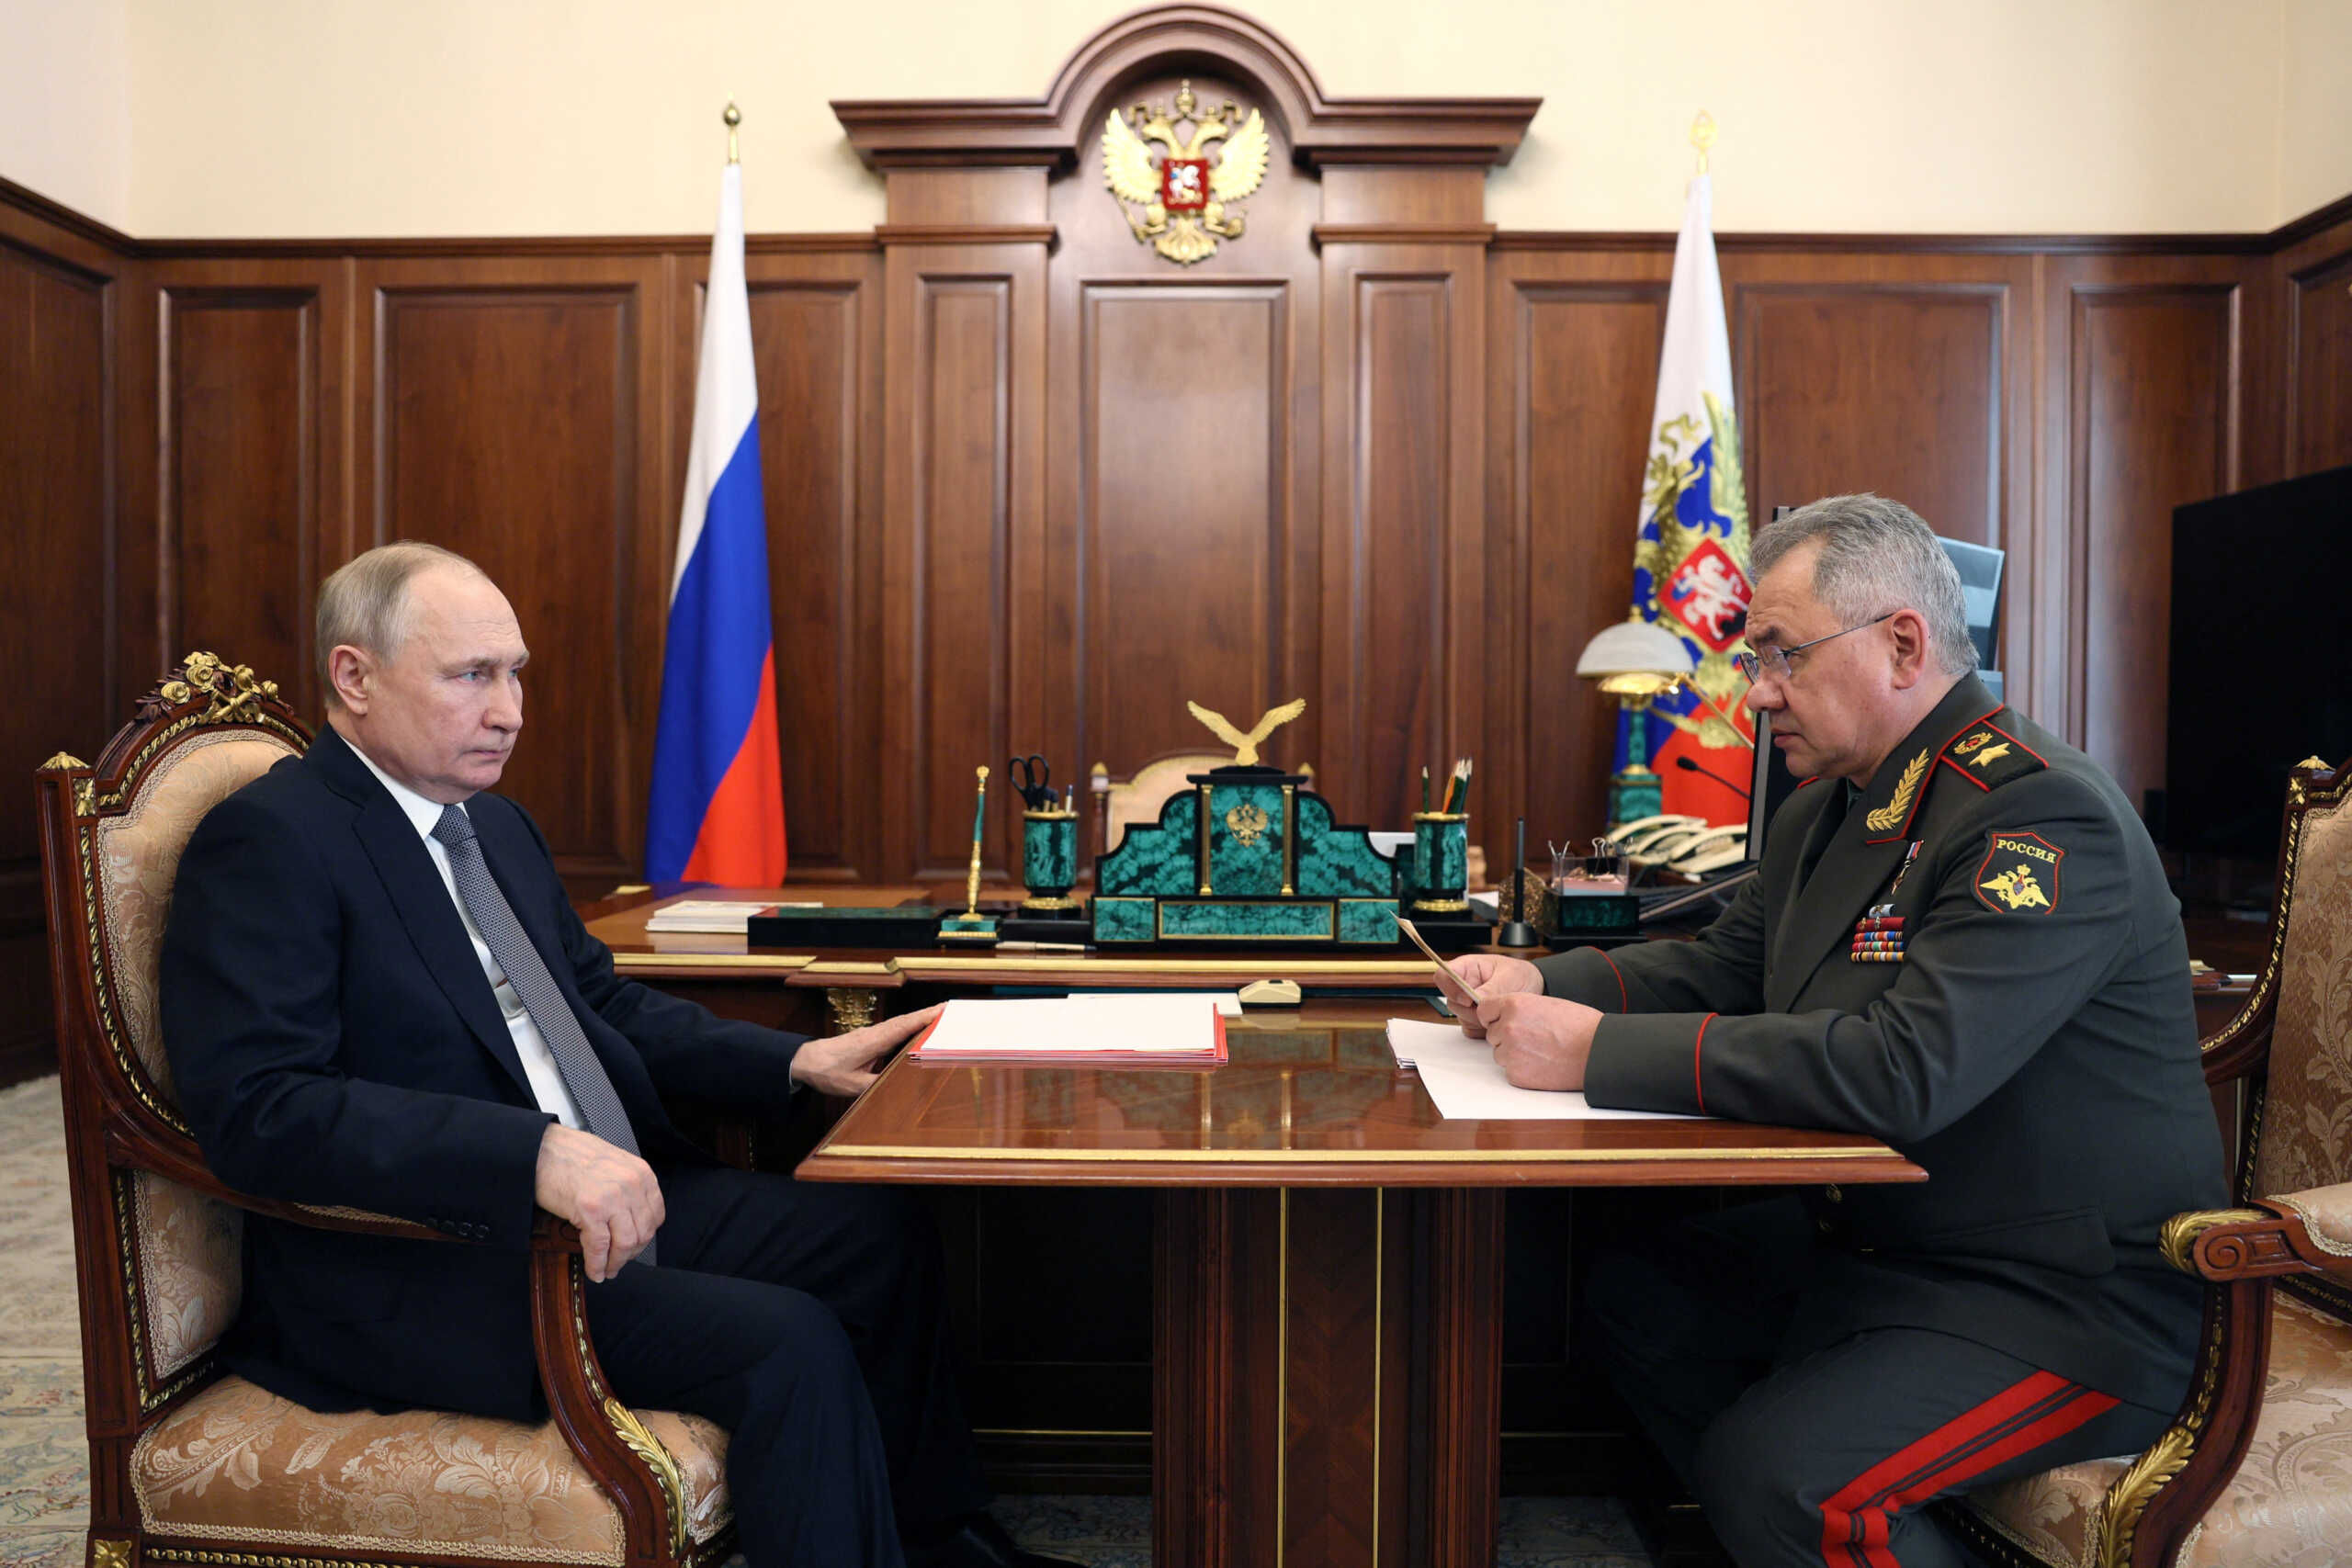 Ρωσία: Πούτιν και Σοϊγκού συζήτησαν για τις ασκήσεις του Στόλου του Ειρηνικού